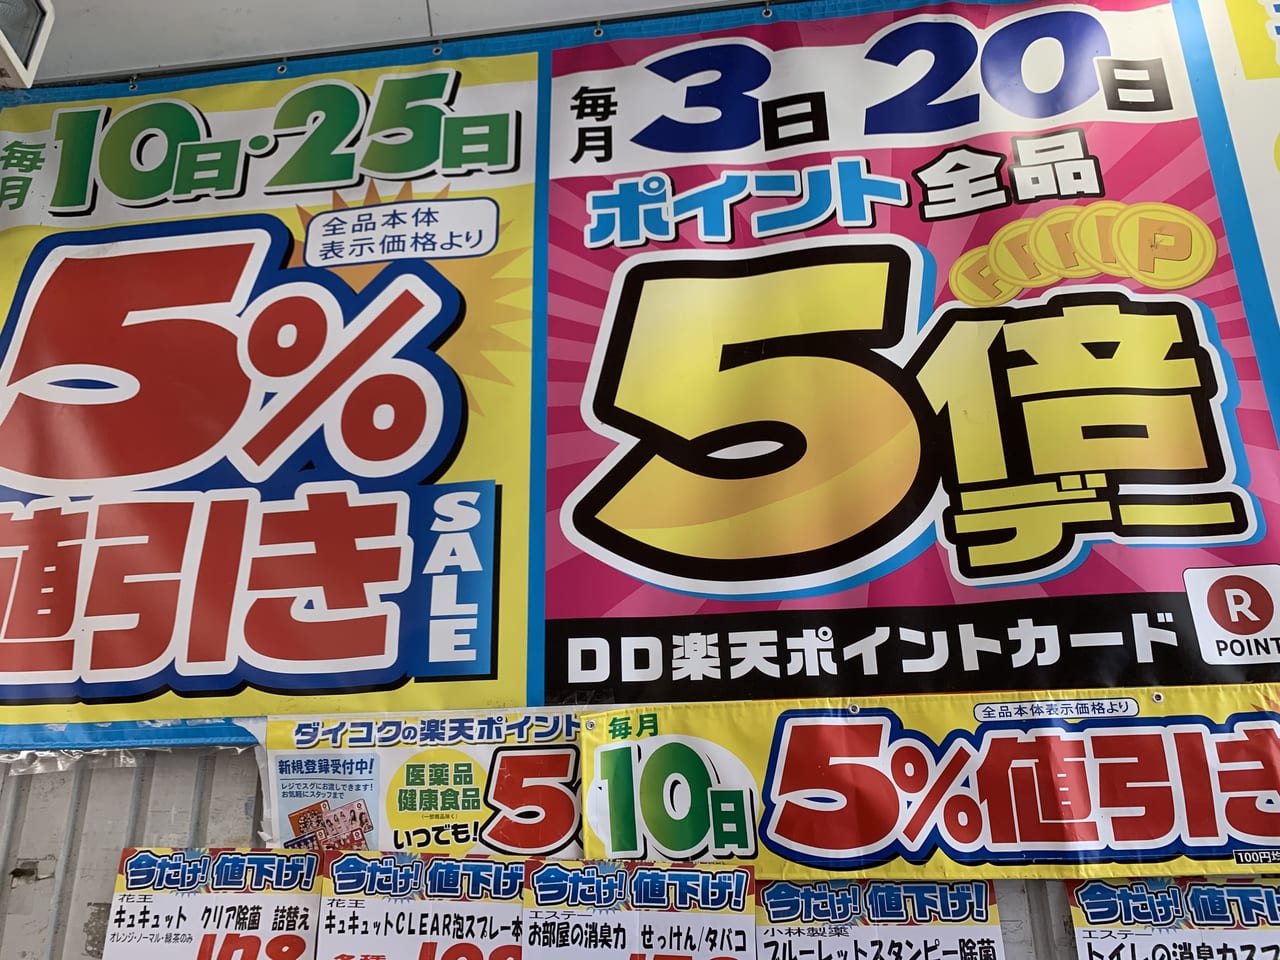 神戸市垂水区 マスクは底値 垂水のダイコクドラッグで値下げマスクの価格をチェック 毎月3日と20日はポイント5倍 号外net 神戸市垂水区 須磨区